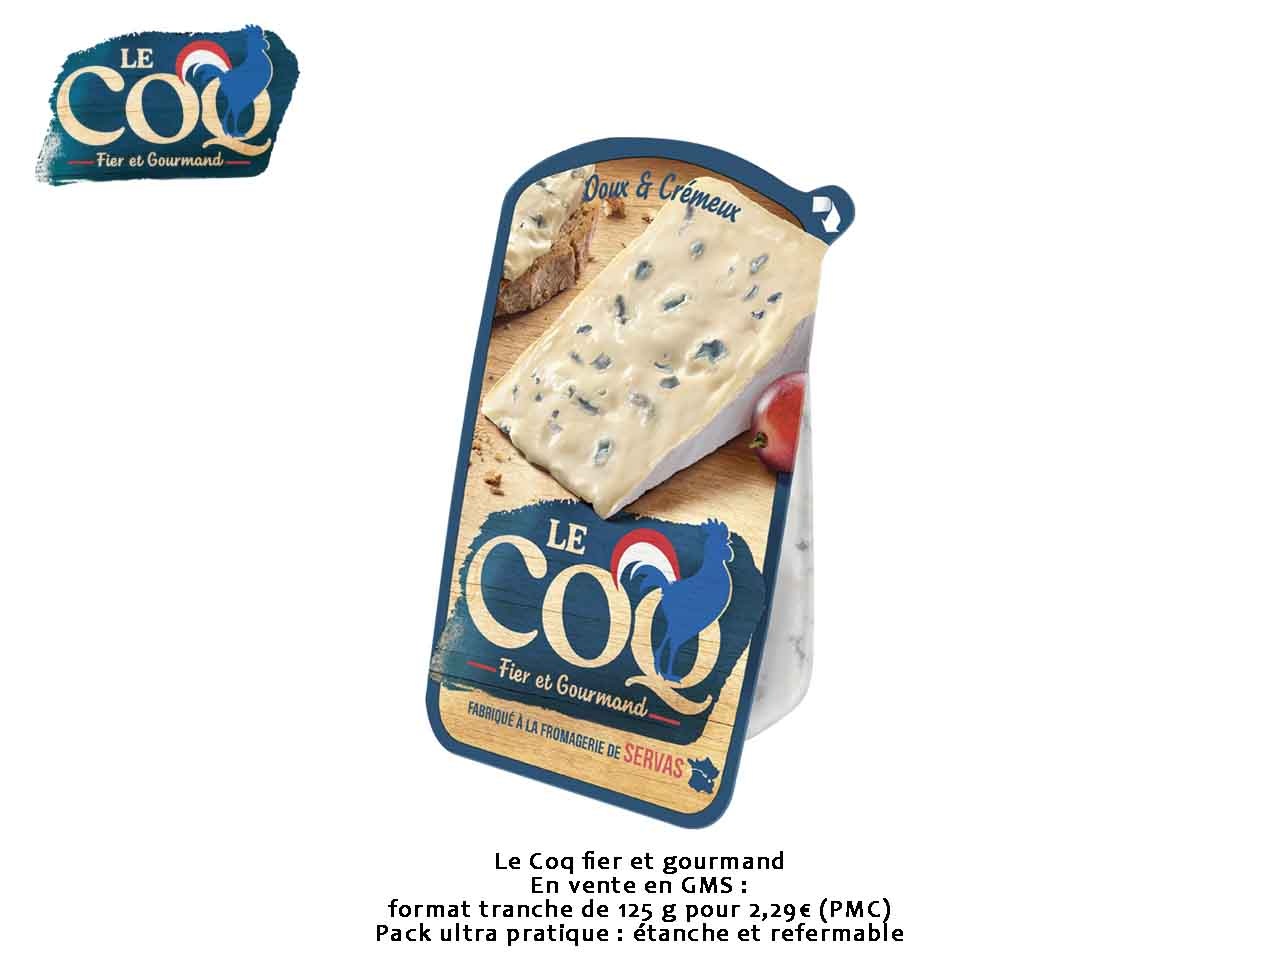 Le Coq présente son fromage fier et gourmand